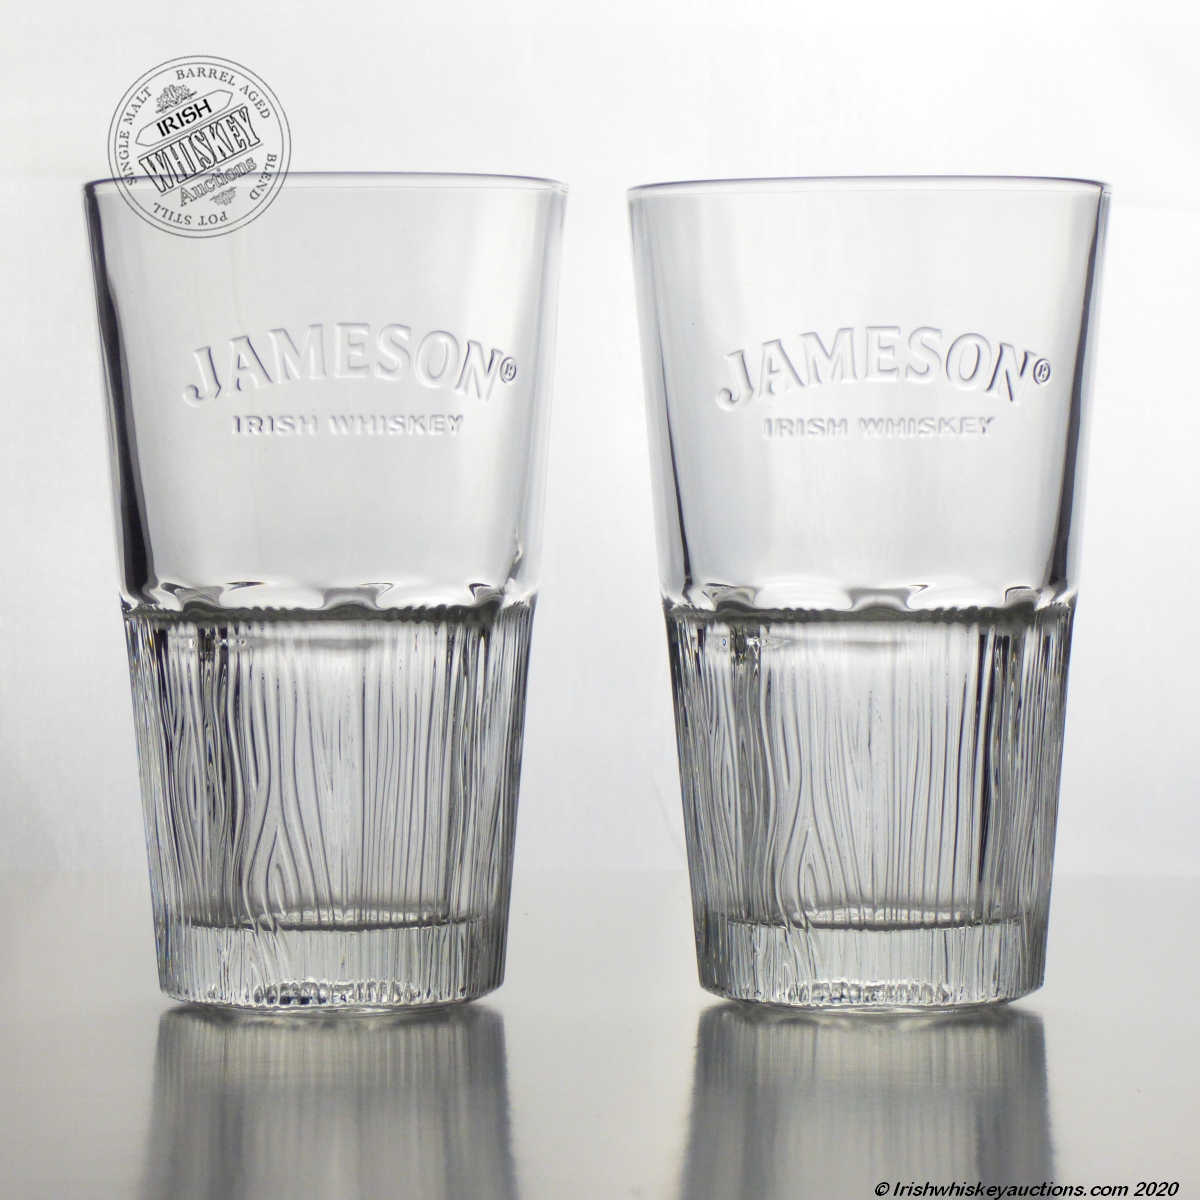 Jameson Tall Glass - Pack of 2  Jameson Irish Whiskey - Jameson